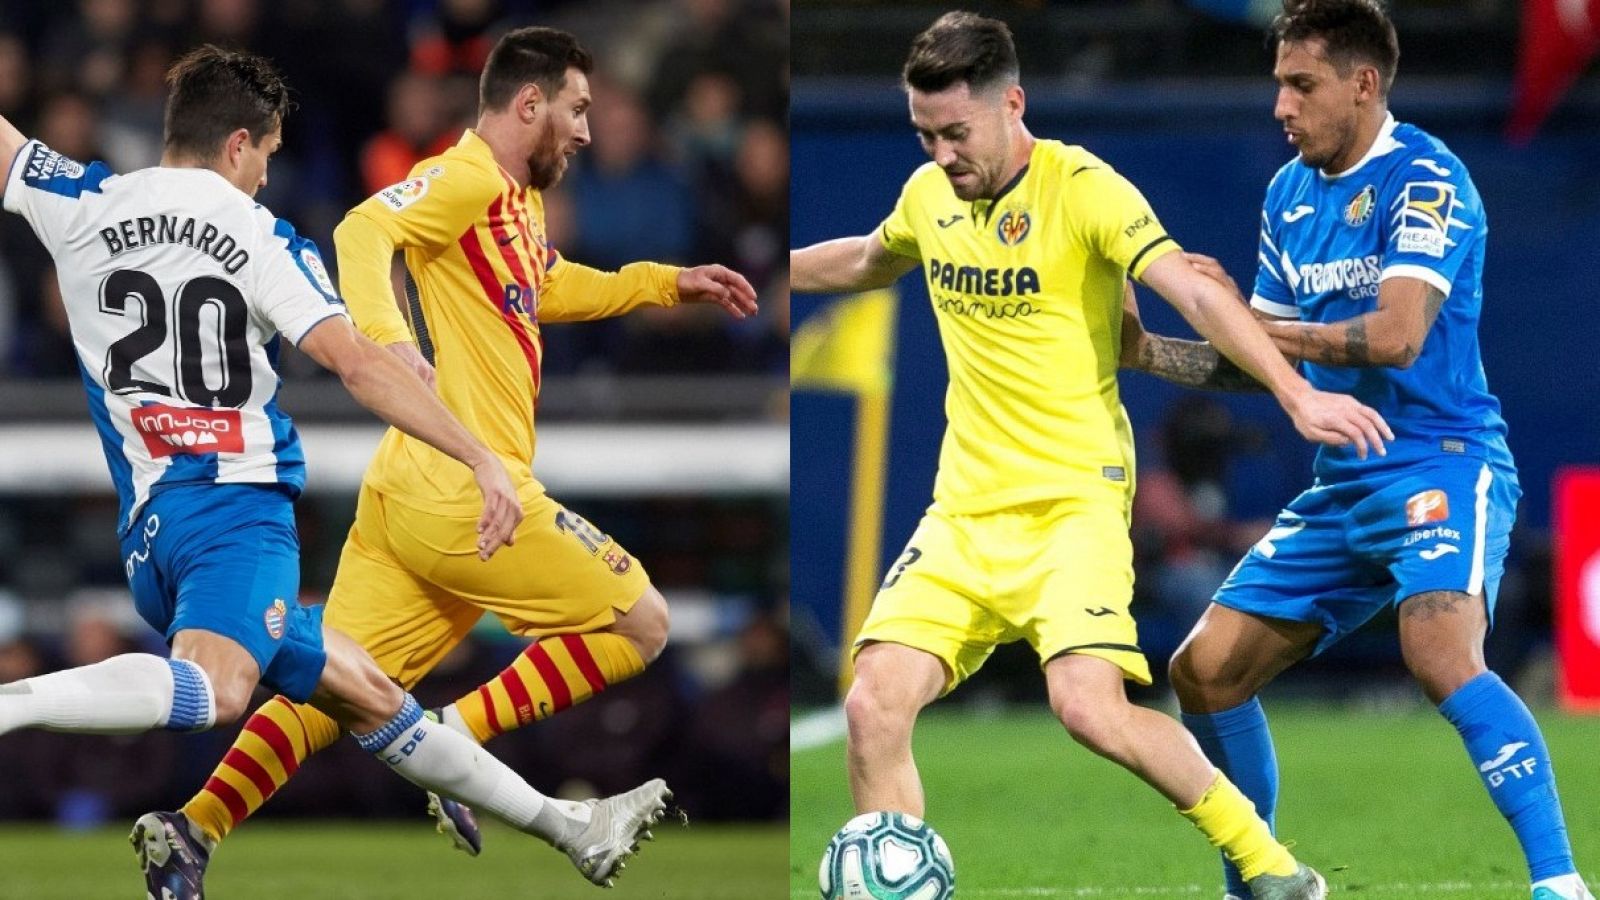 Dos lances del juego del Espanayol-Barcelona y Villarreal-Getafe de Liga.